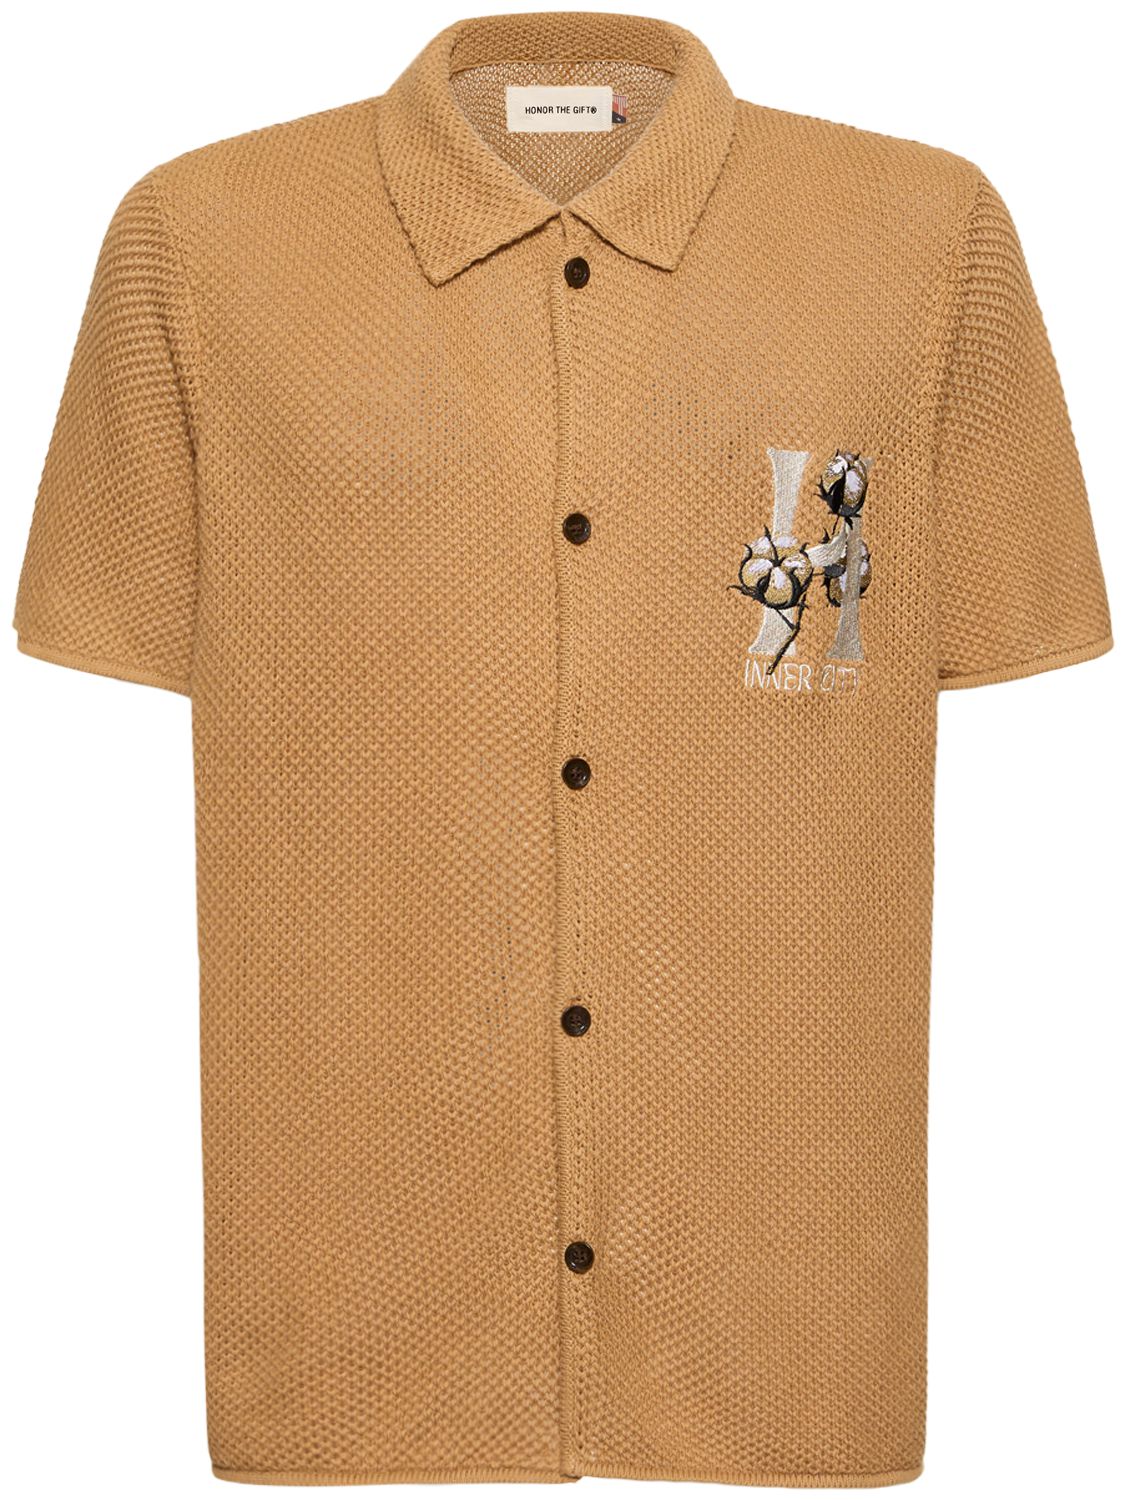 Short Sleeve Knit Cotton Shirt